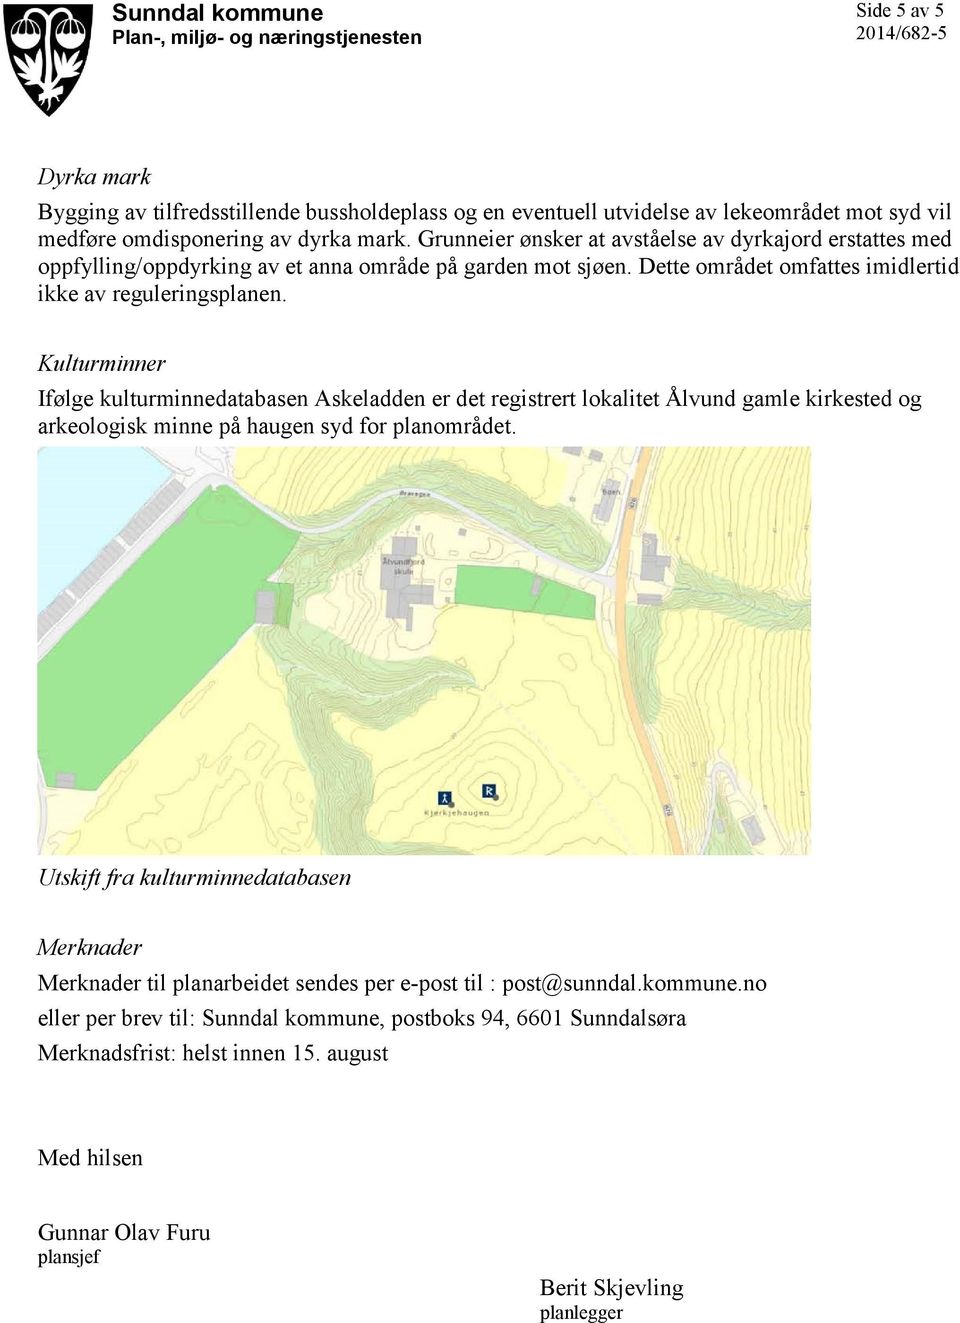 Kulturminner Ifølge kulturminnedatabasen Askeladden er det registrert lokalitet Ålvund gamle kirkested og arkeologisk minne på haugen syd for planområdet.